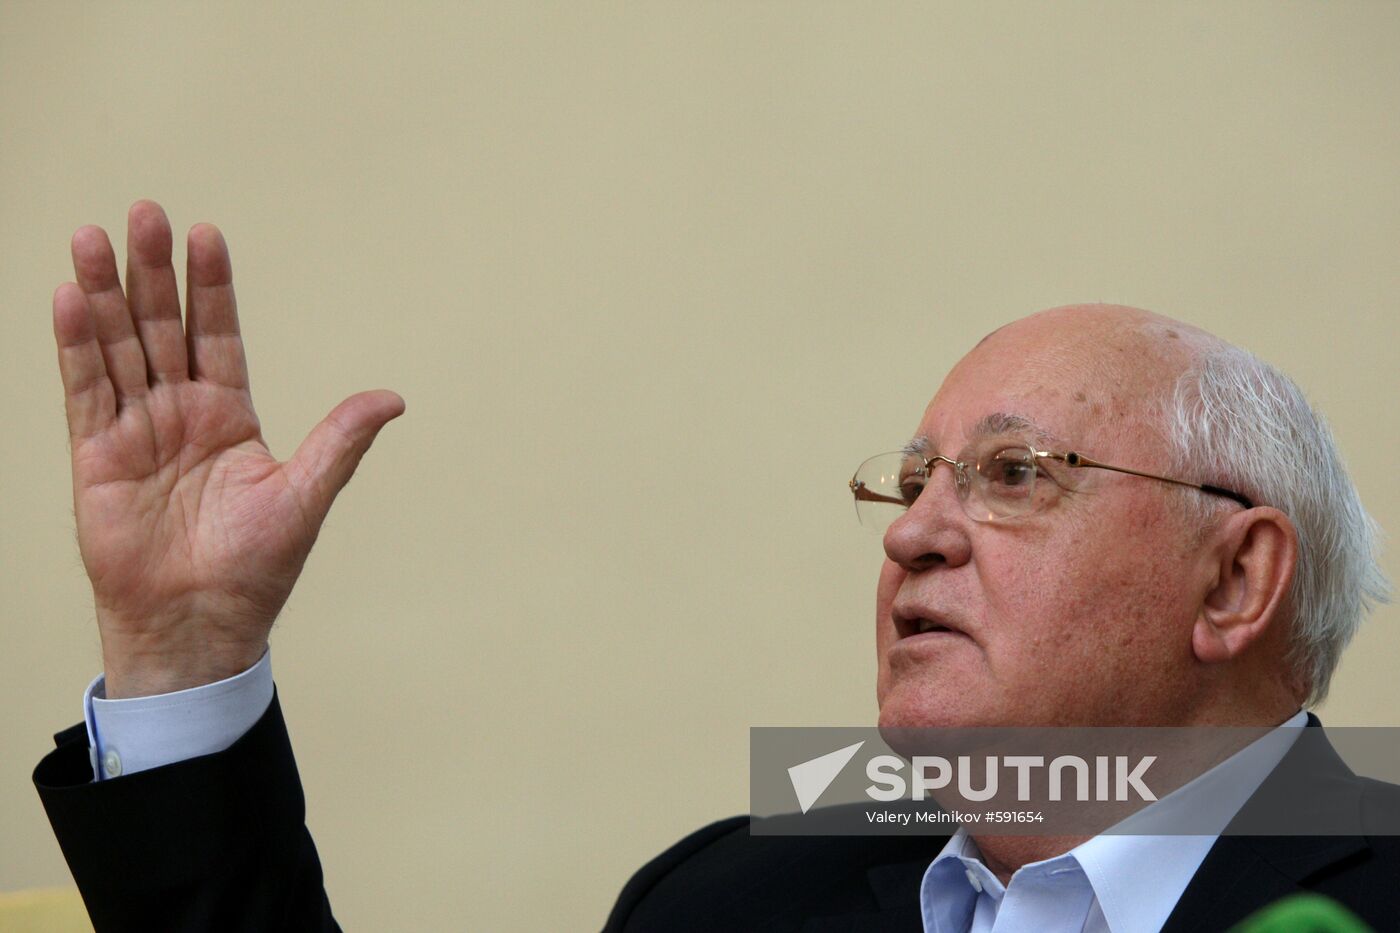 News conference of Mikhail Gorbachev